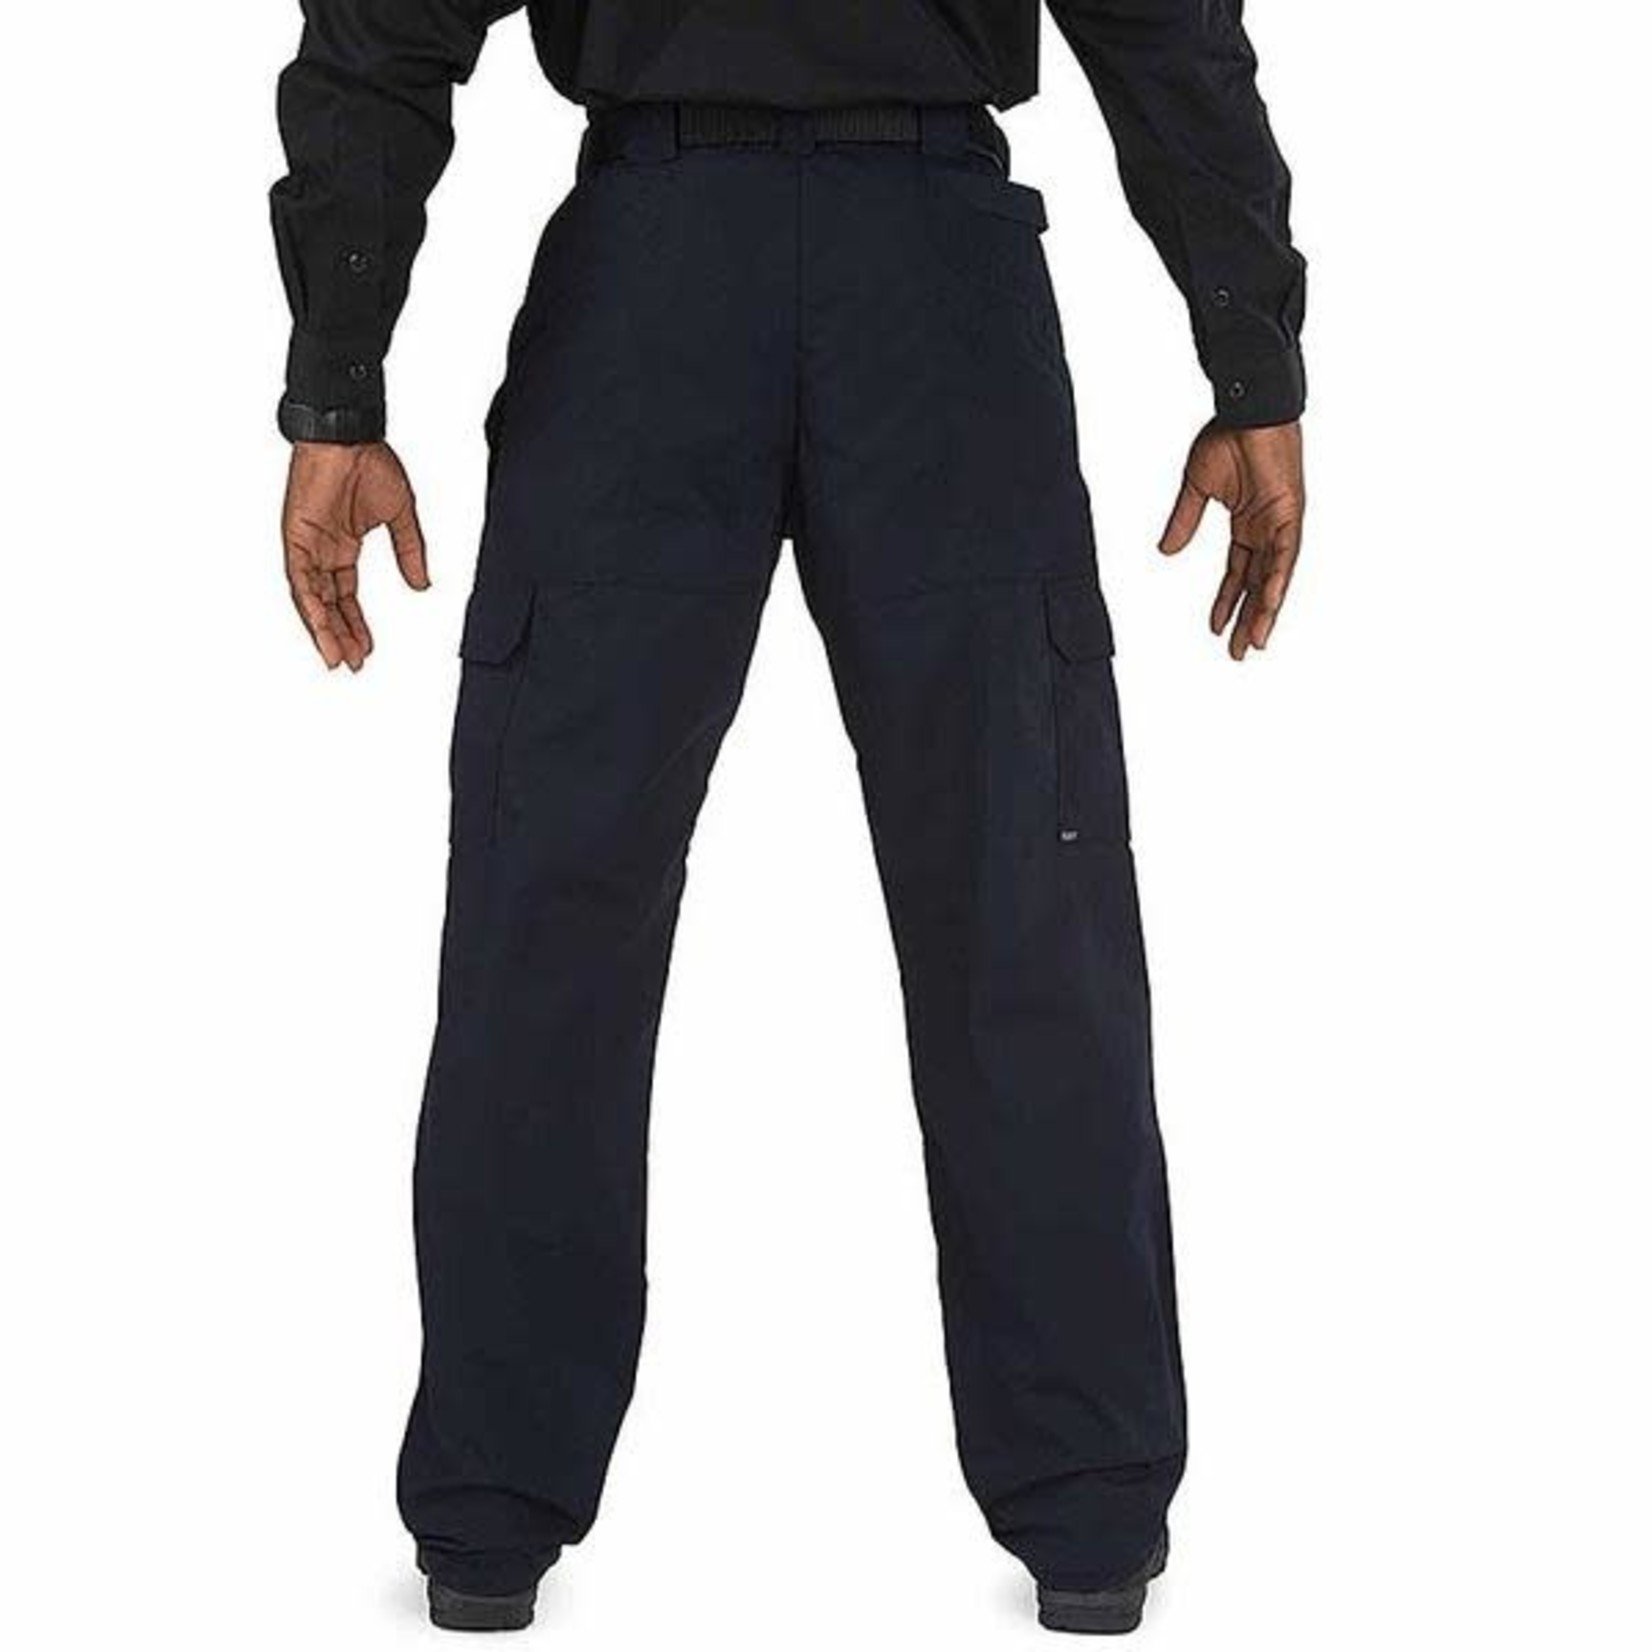 5.11 Tactical 5.11 Men's Taclite Pro Pants